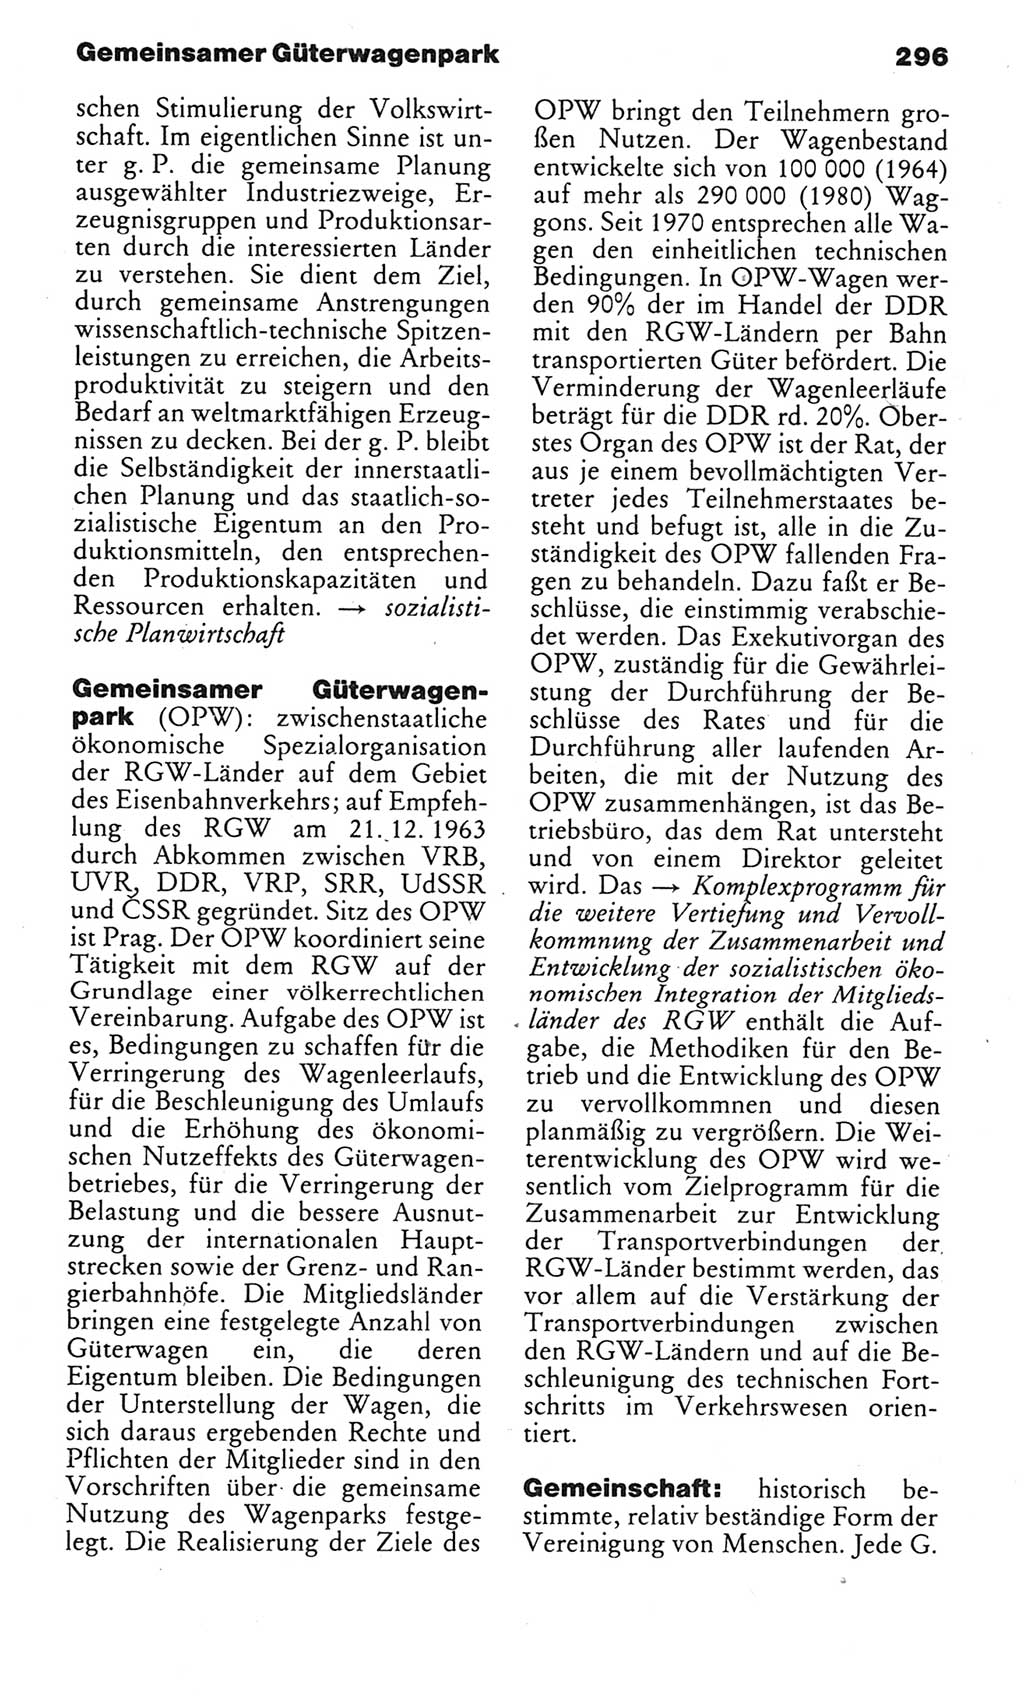 Kleines politisches Wörterbuch [Deutsche Demokratische Republik (DDR)] 1985, Seite 296 (Kl. pol. Wb. DDR 1985, S. 296)